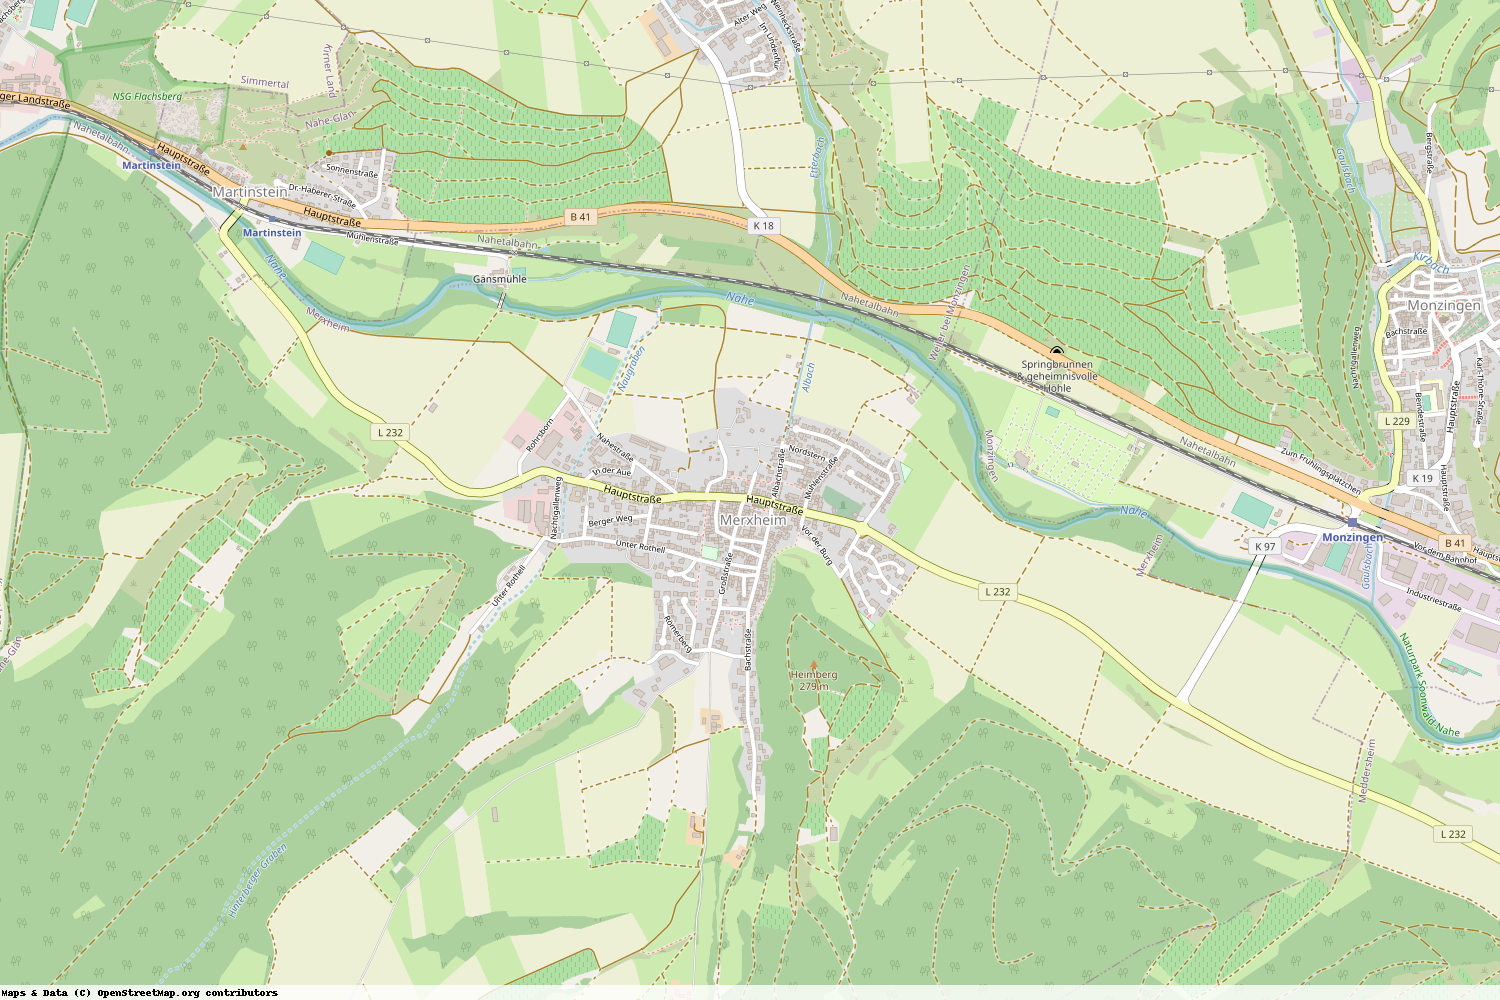 Ist gerade Stromausfall in Rheinland-Pfalz - Bad Kreuznach - Merxheim?